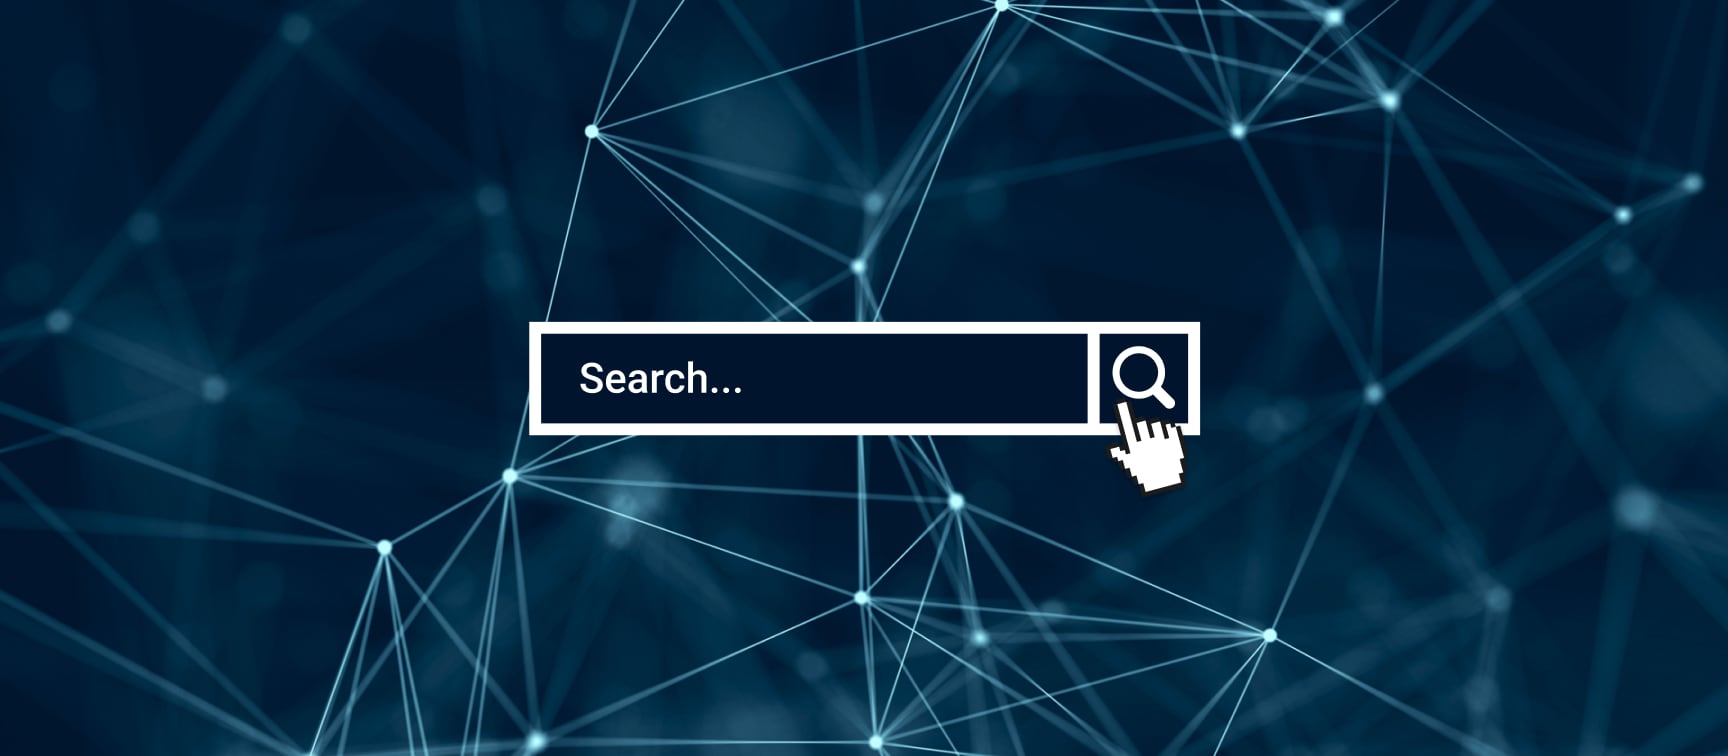 Search engine darknet mega скачать браузер тор бесплатной mega